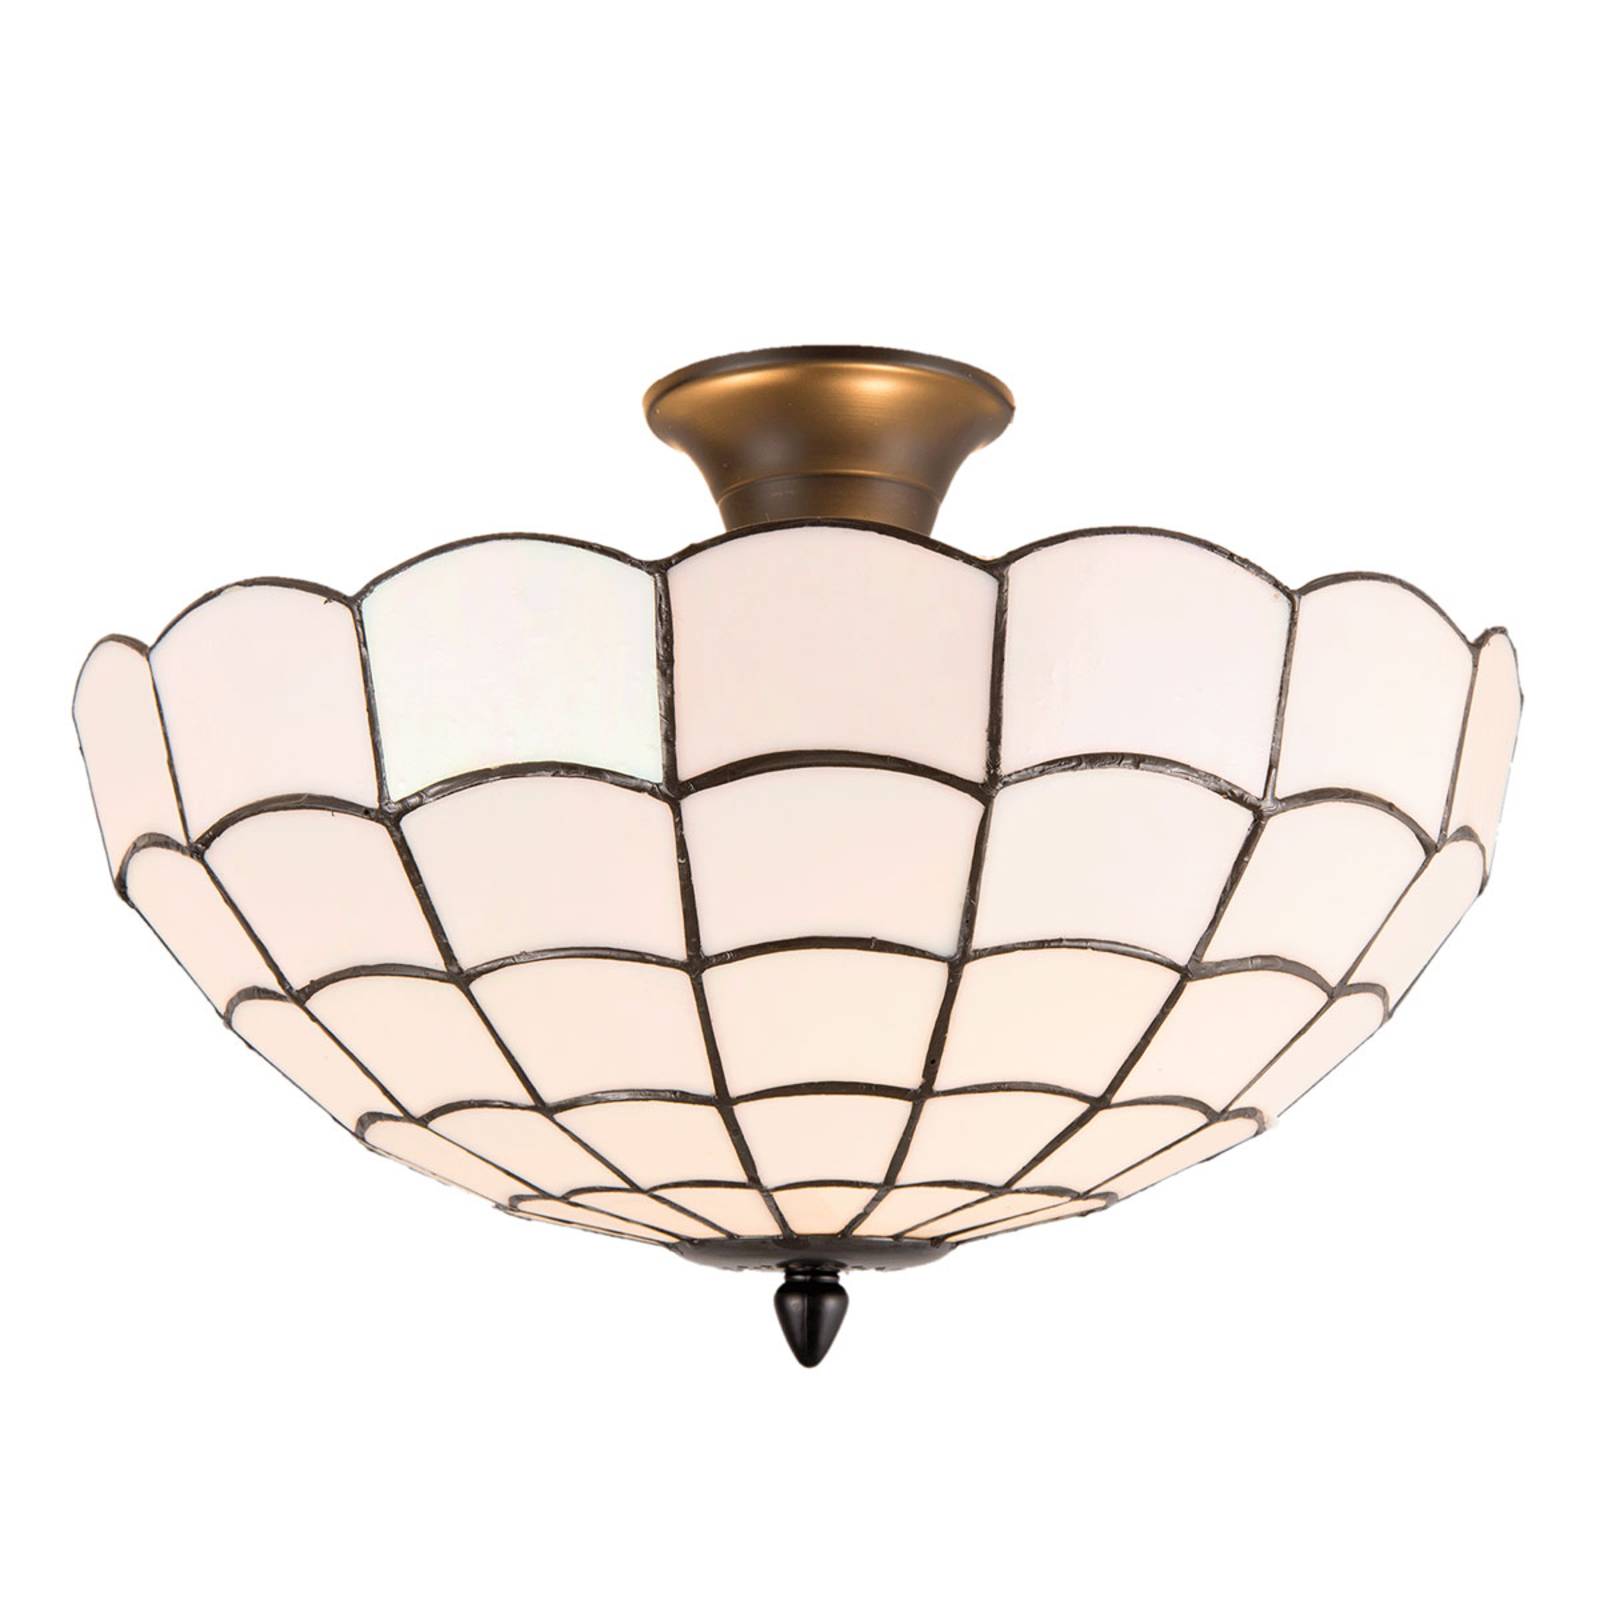 Plafondlamp Wiebke, wit, in Tiffany-stijl